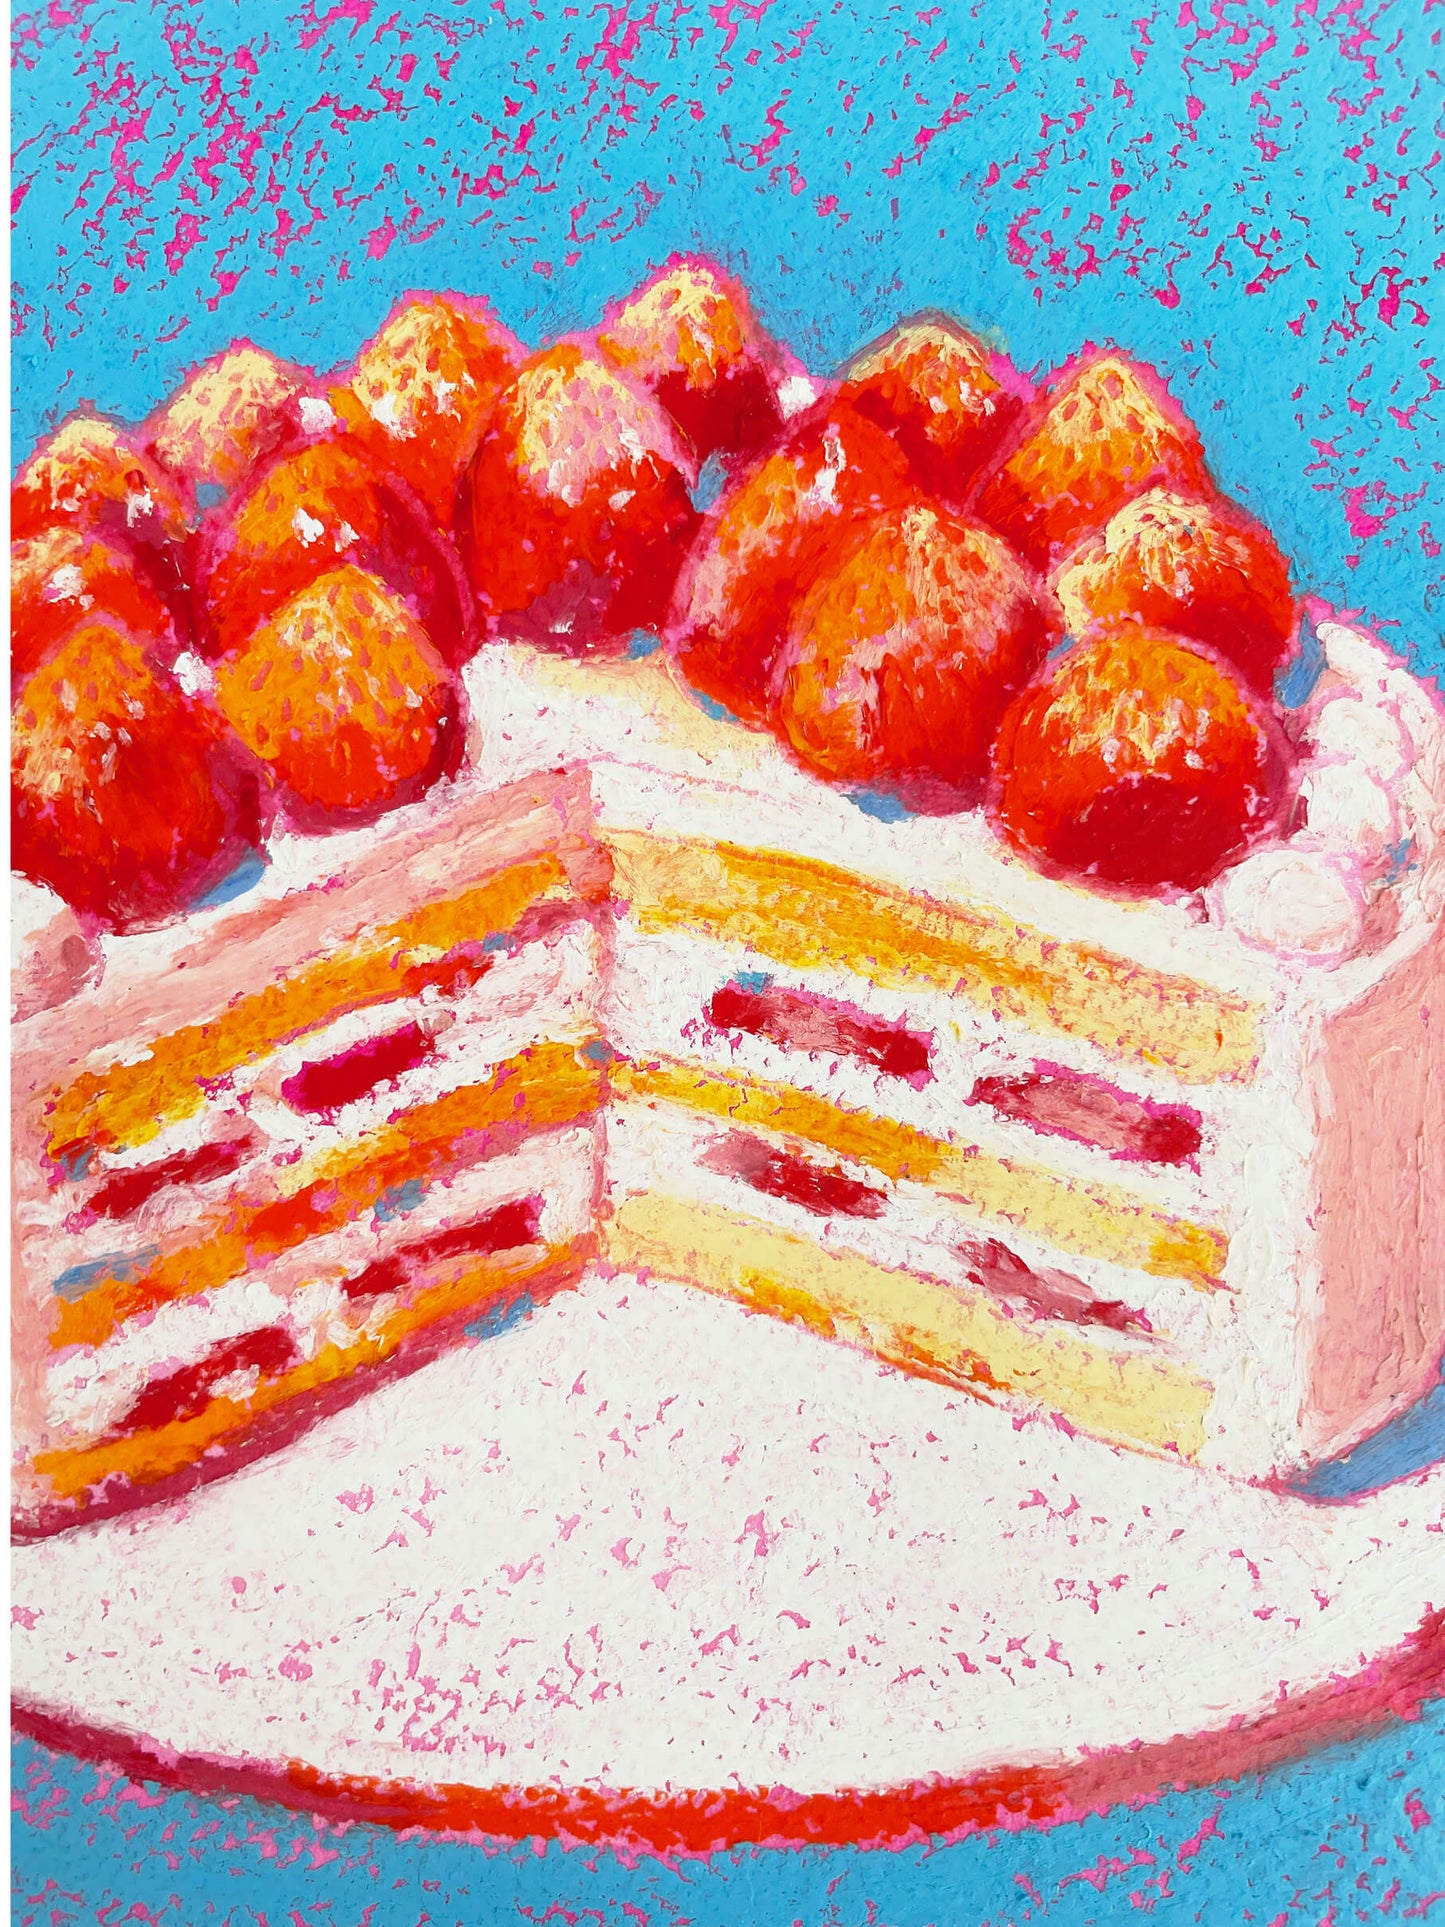 Strawberry Cake Original Artwork